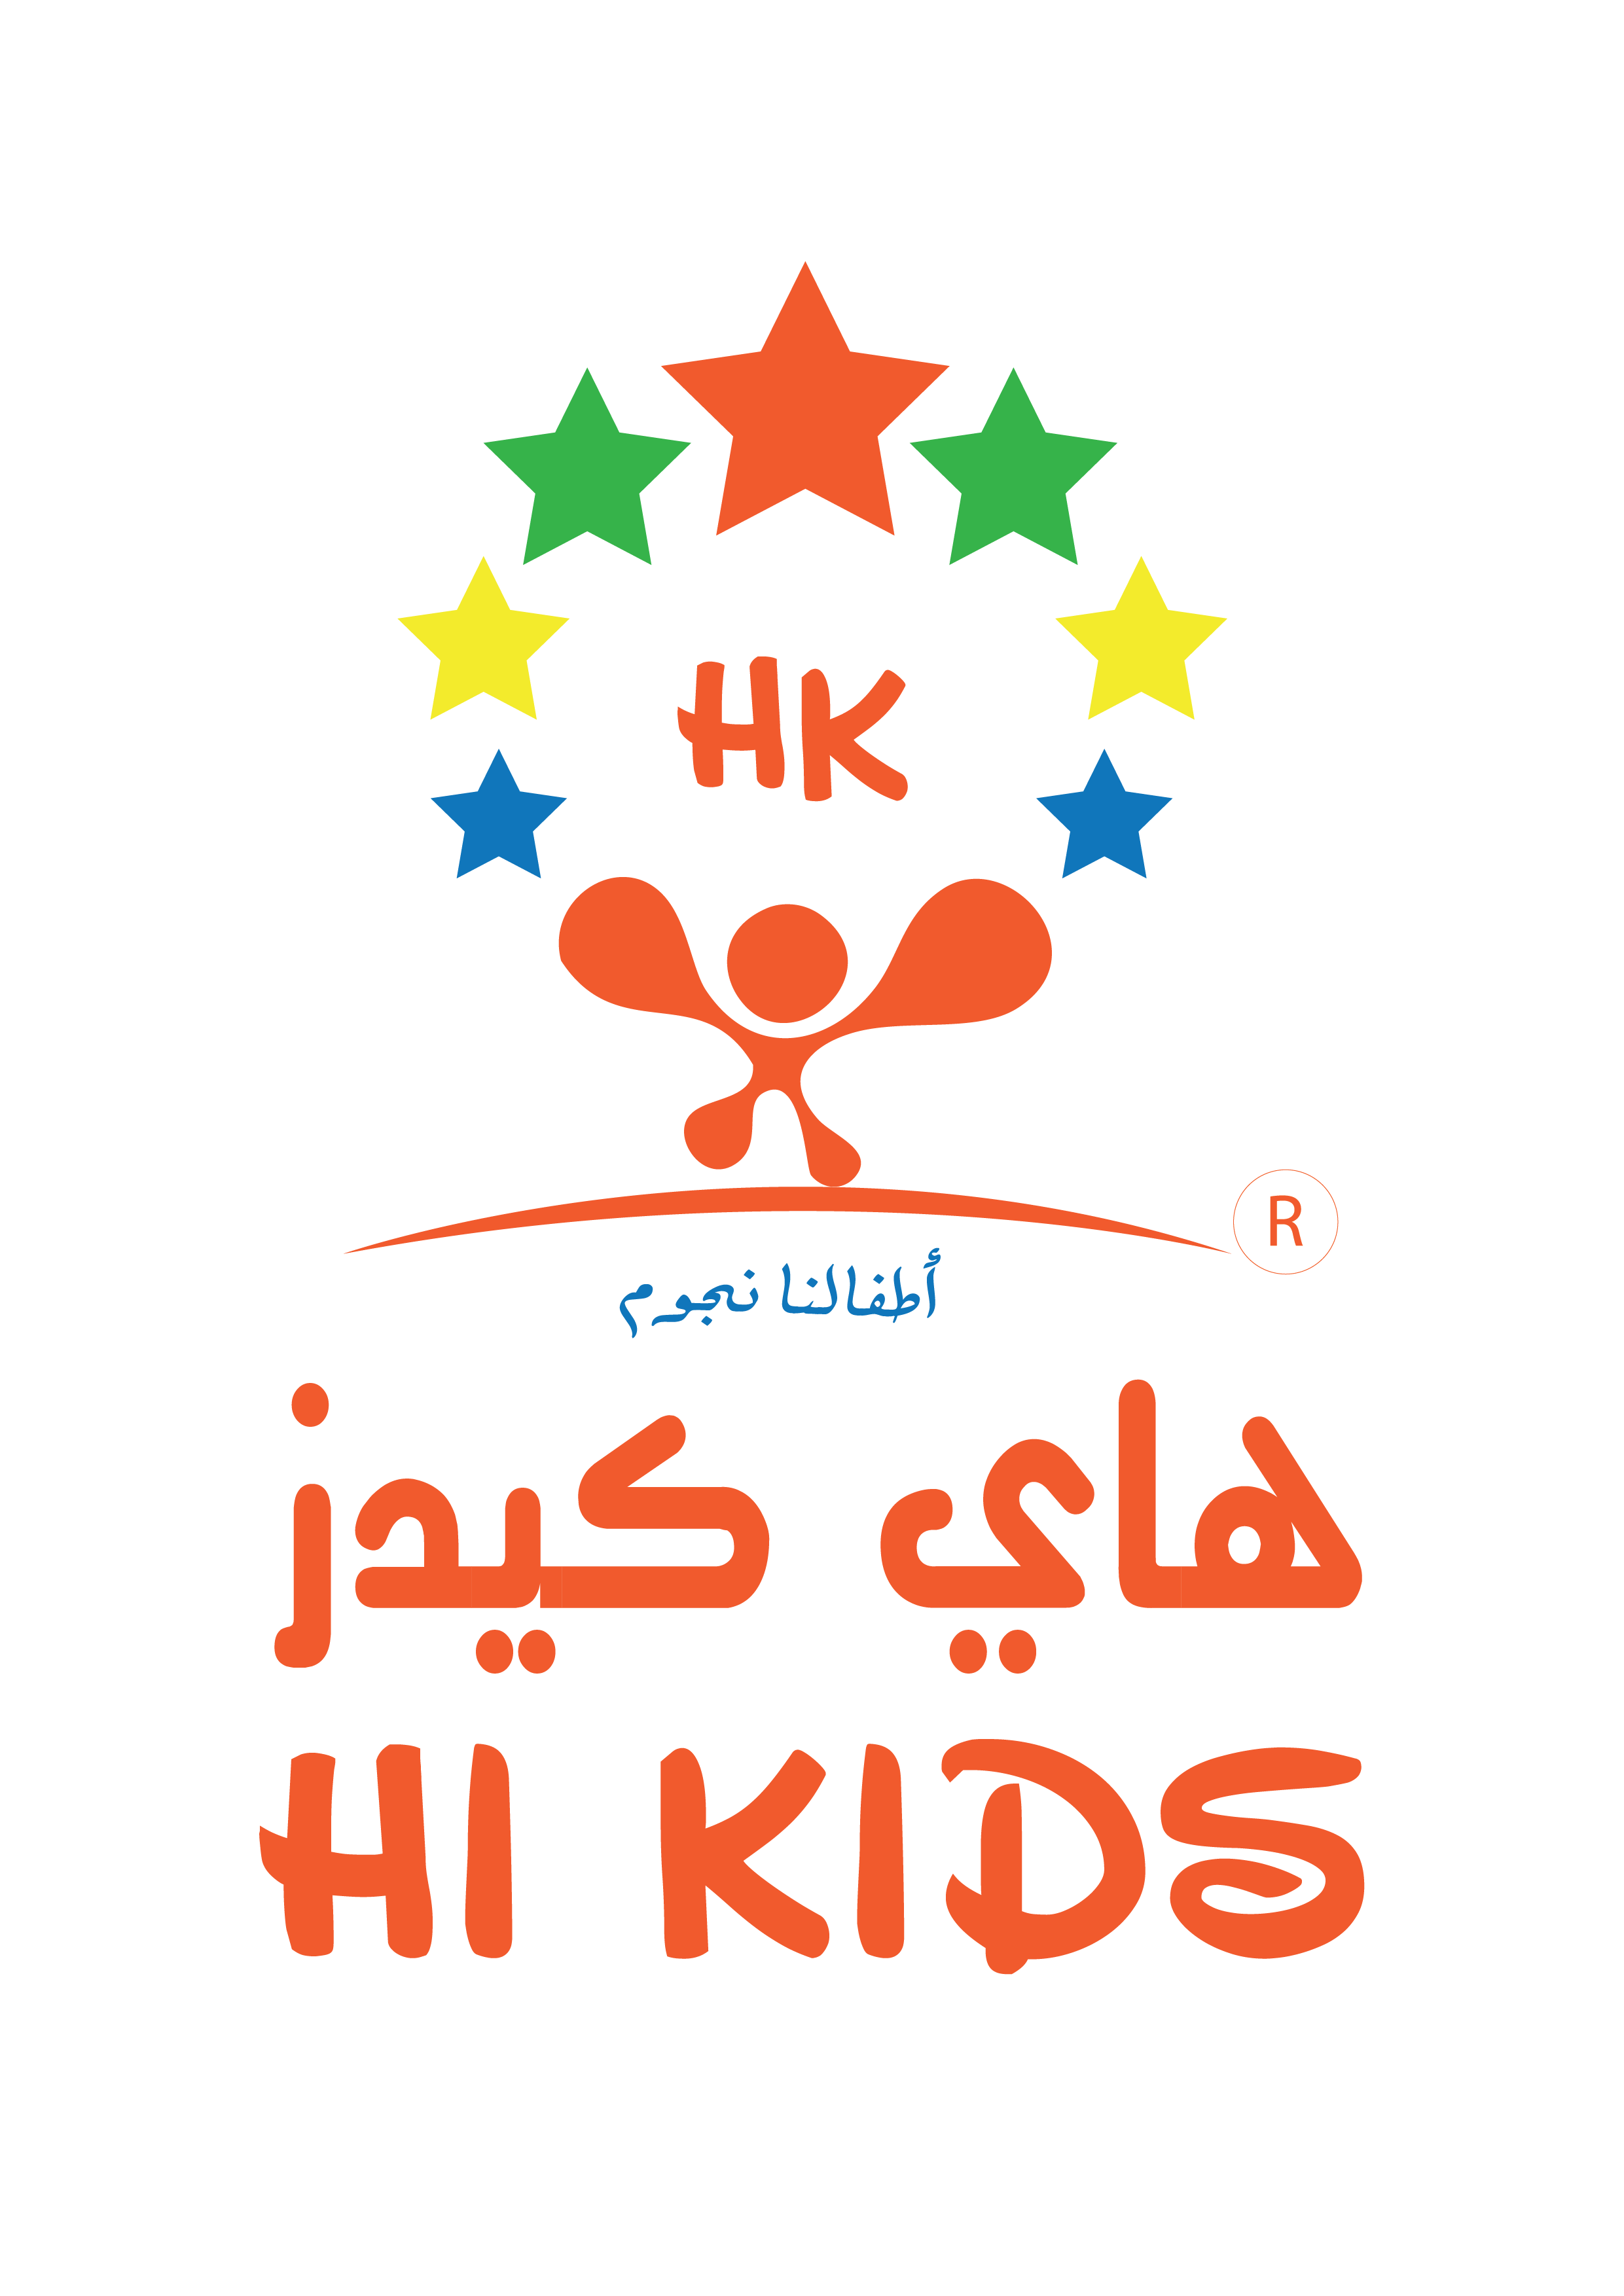 Hi Kids retailer logo